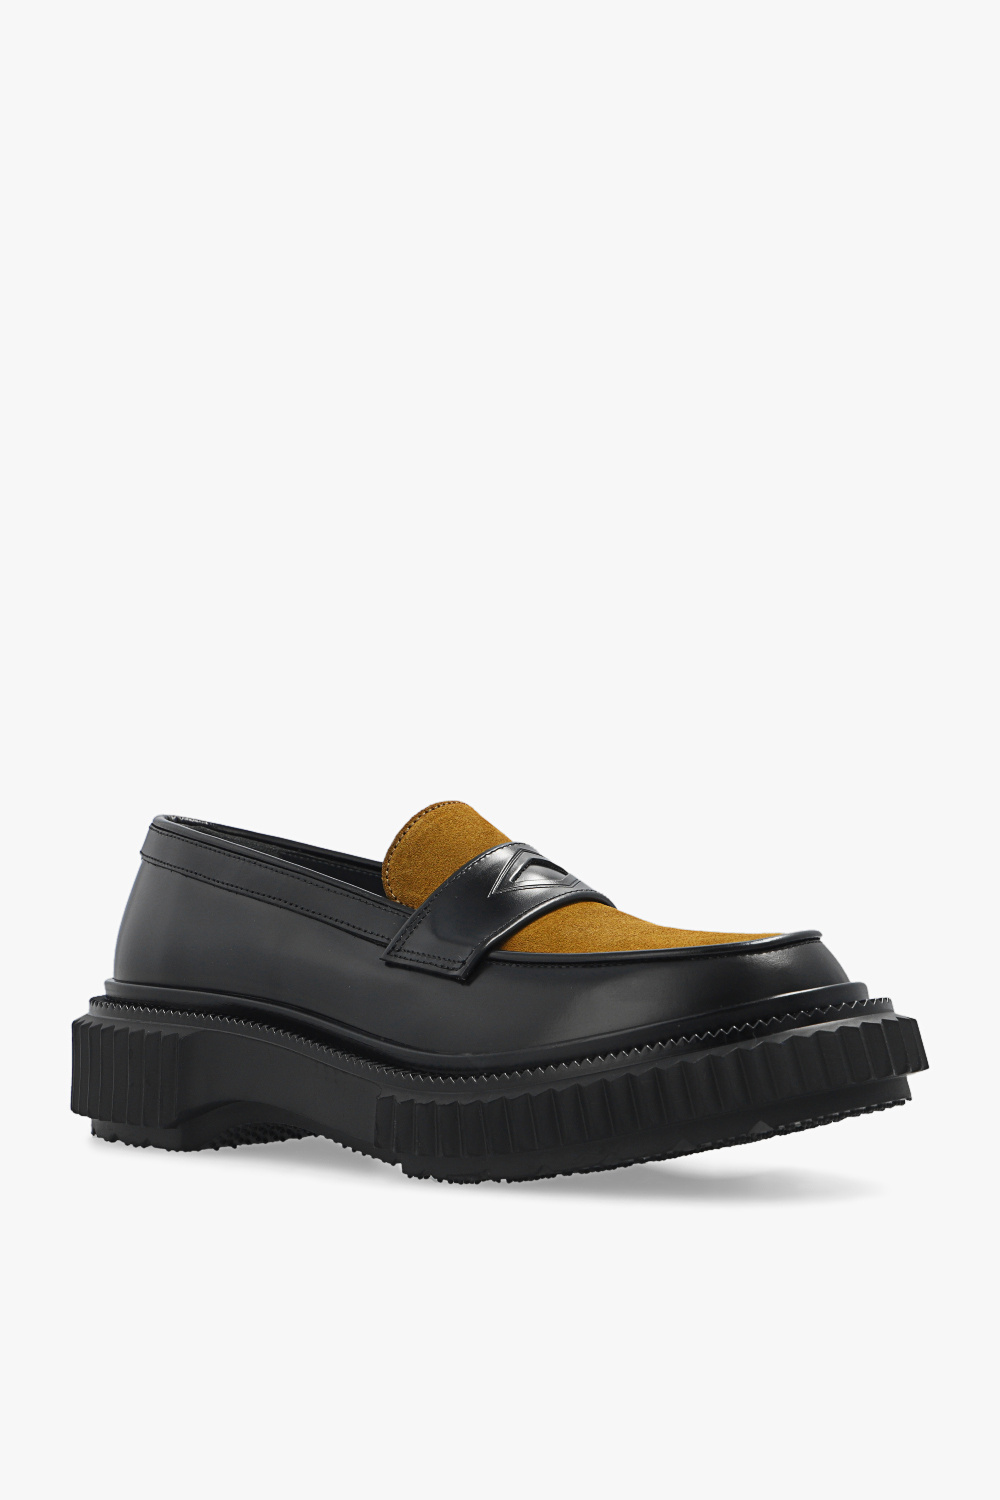 Adieu Paris 'Type 182' leather loafers | Men's Shoes | Vitkac